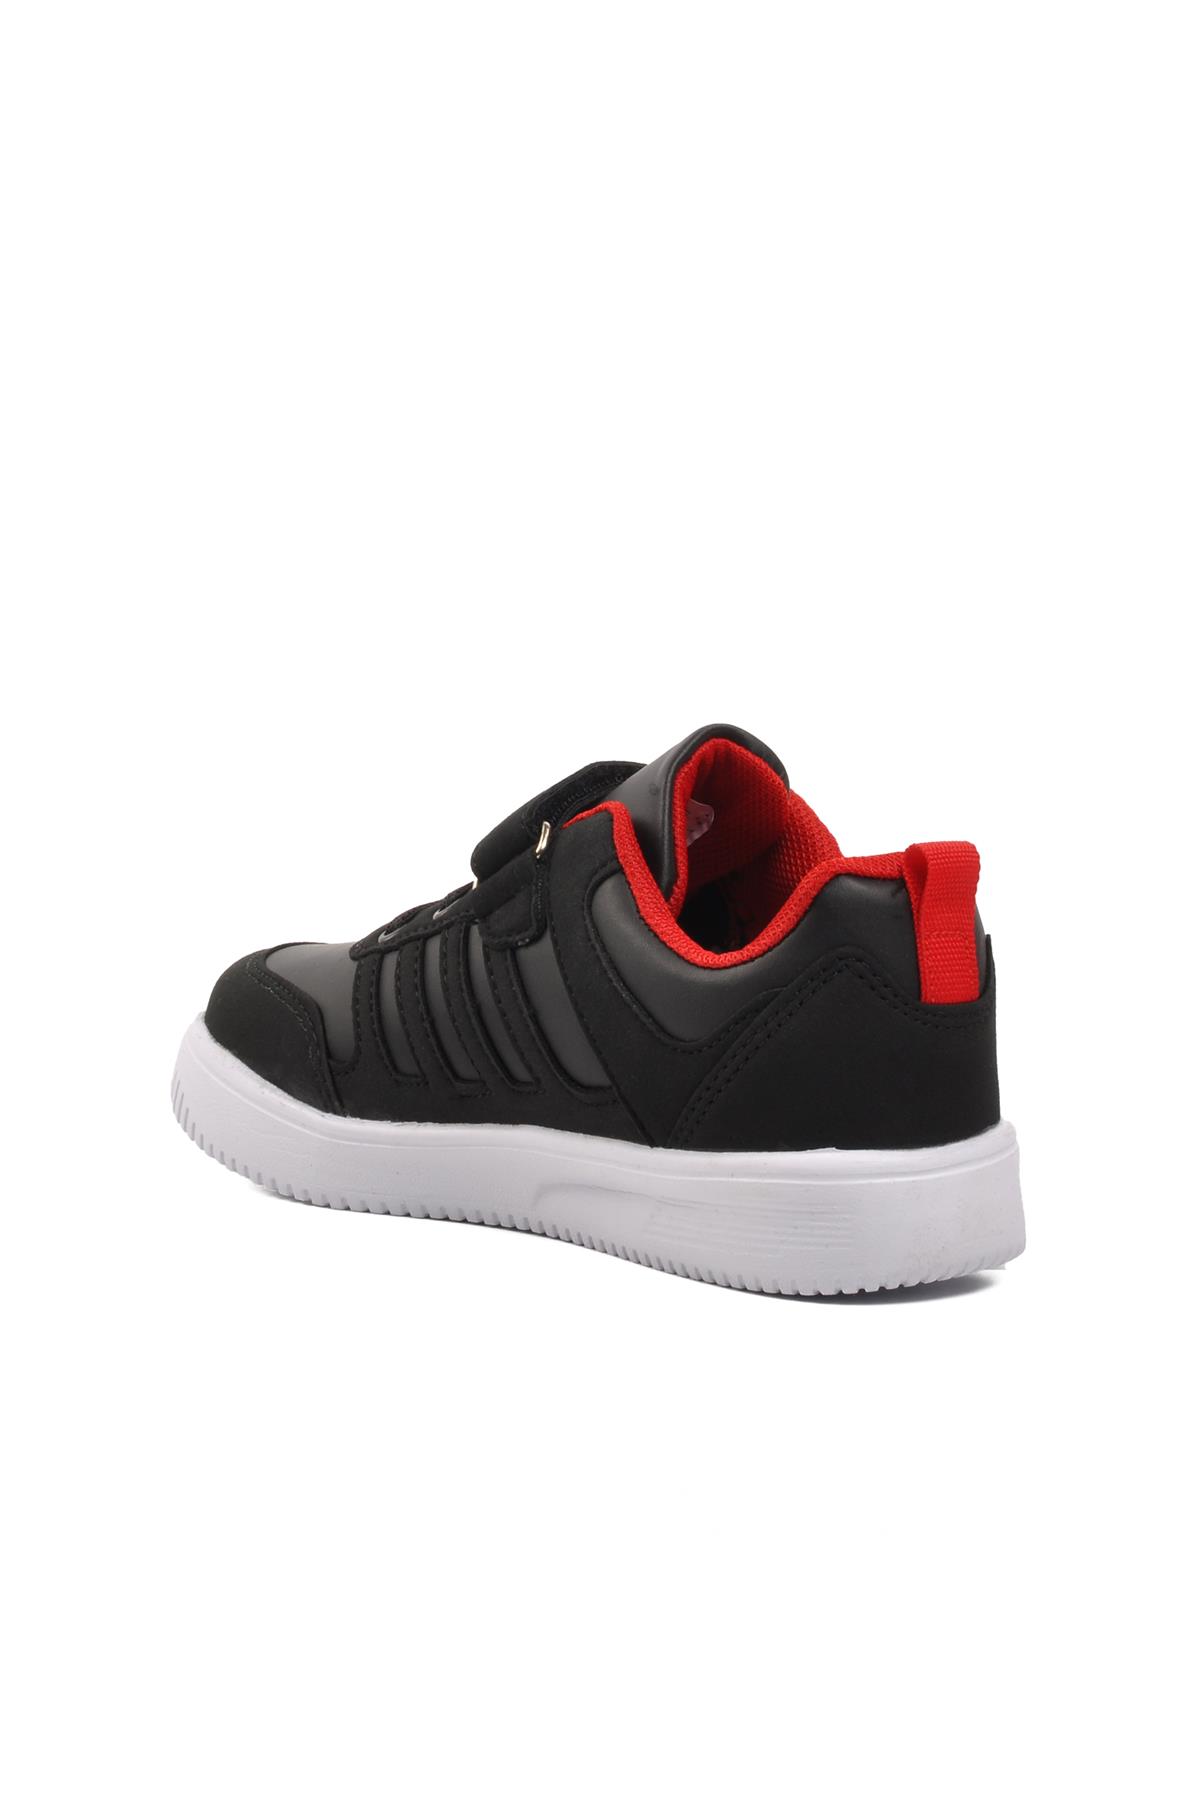 Walkway Mely-F Siyah-Beyaz-Kırmızı Cırtlı Çocuk Sneaker Walkway Çocuk Spor Ayakkabı